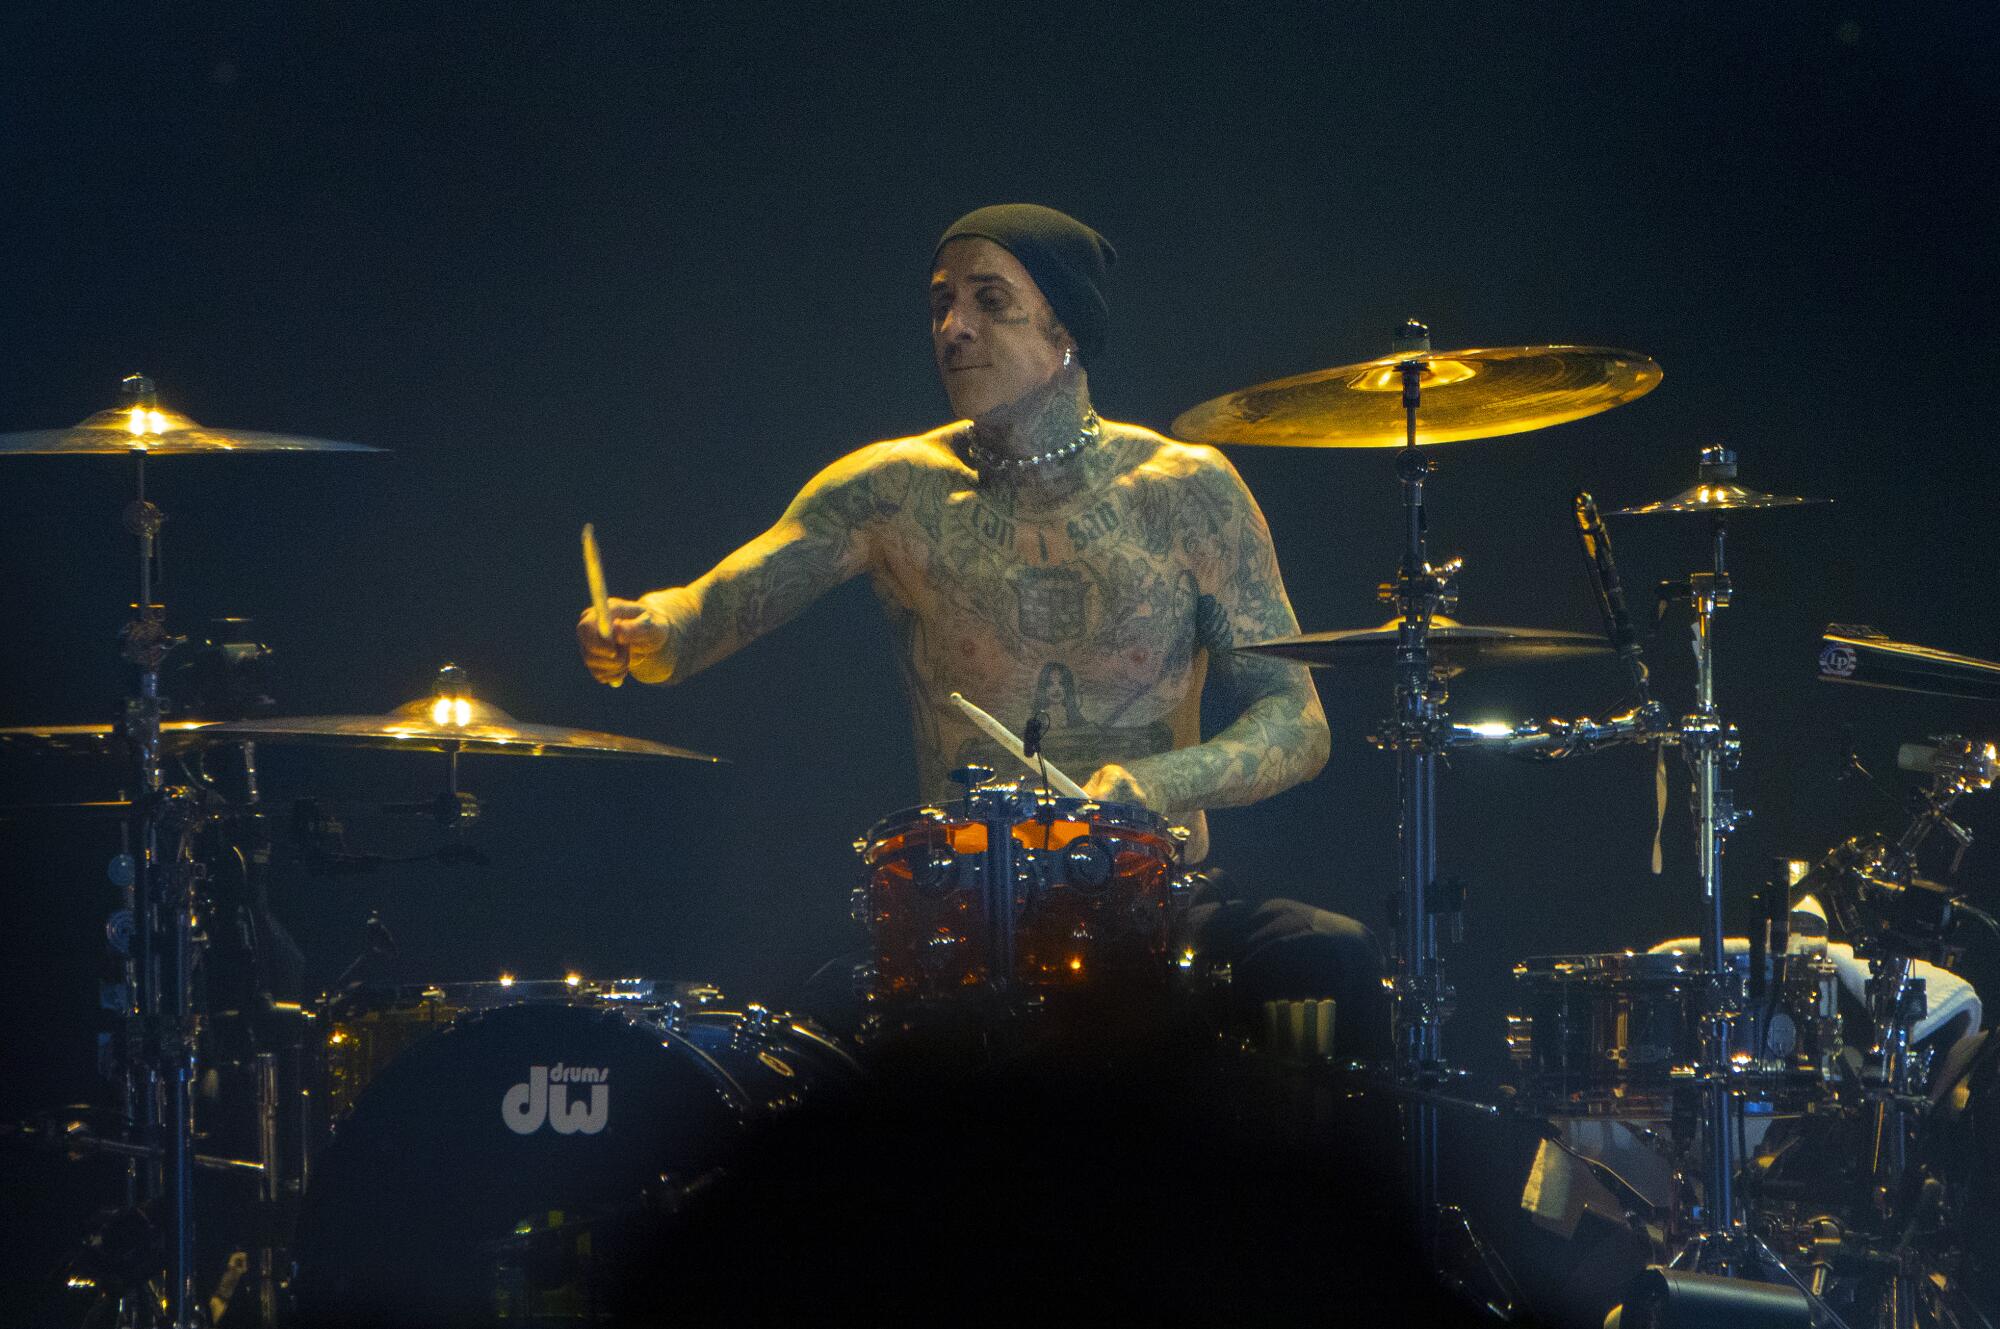 Drummer Travis Barker of blink-182 plays on Monday.